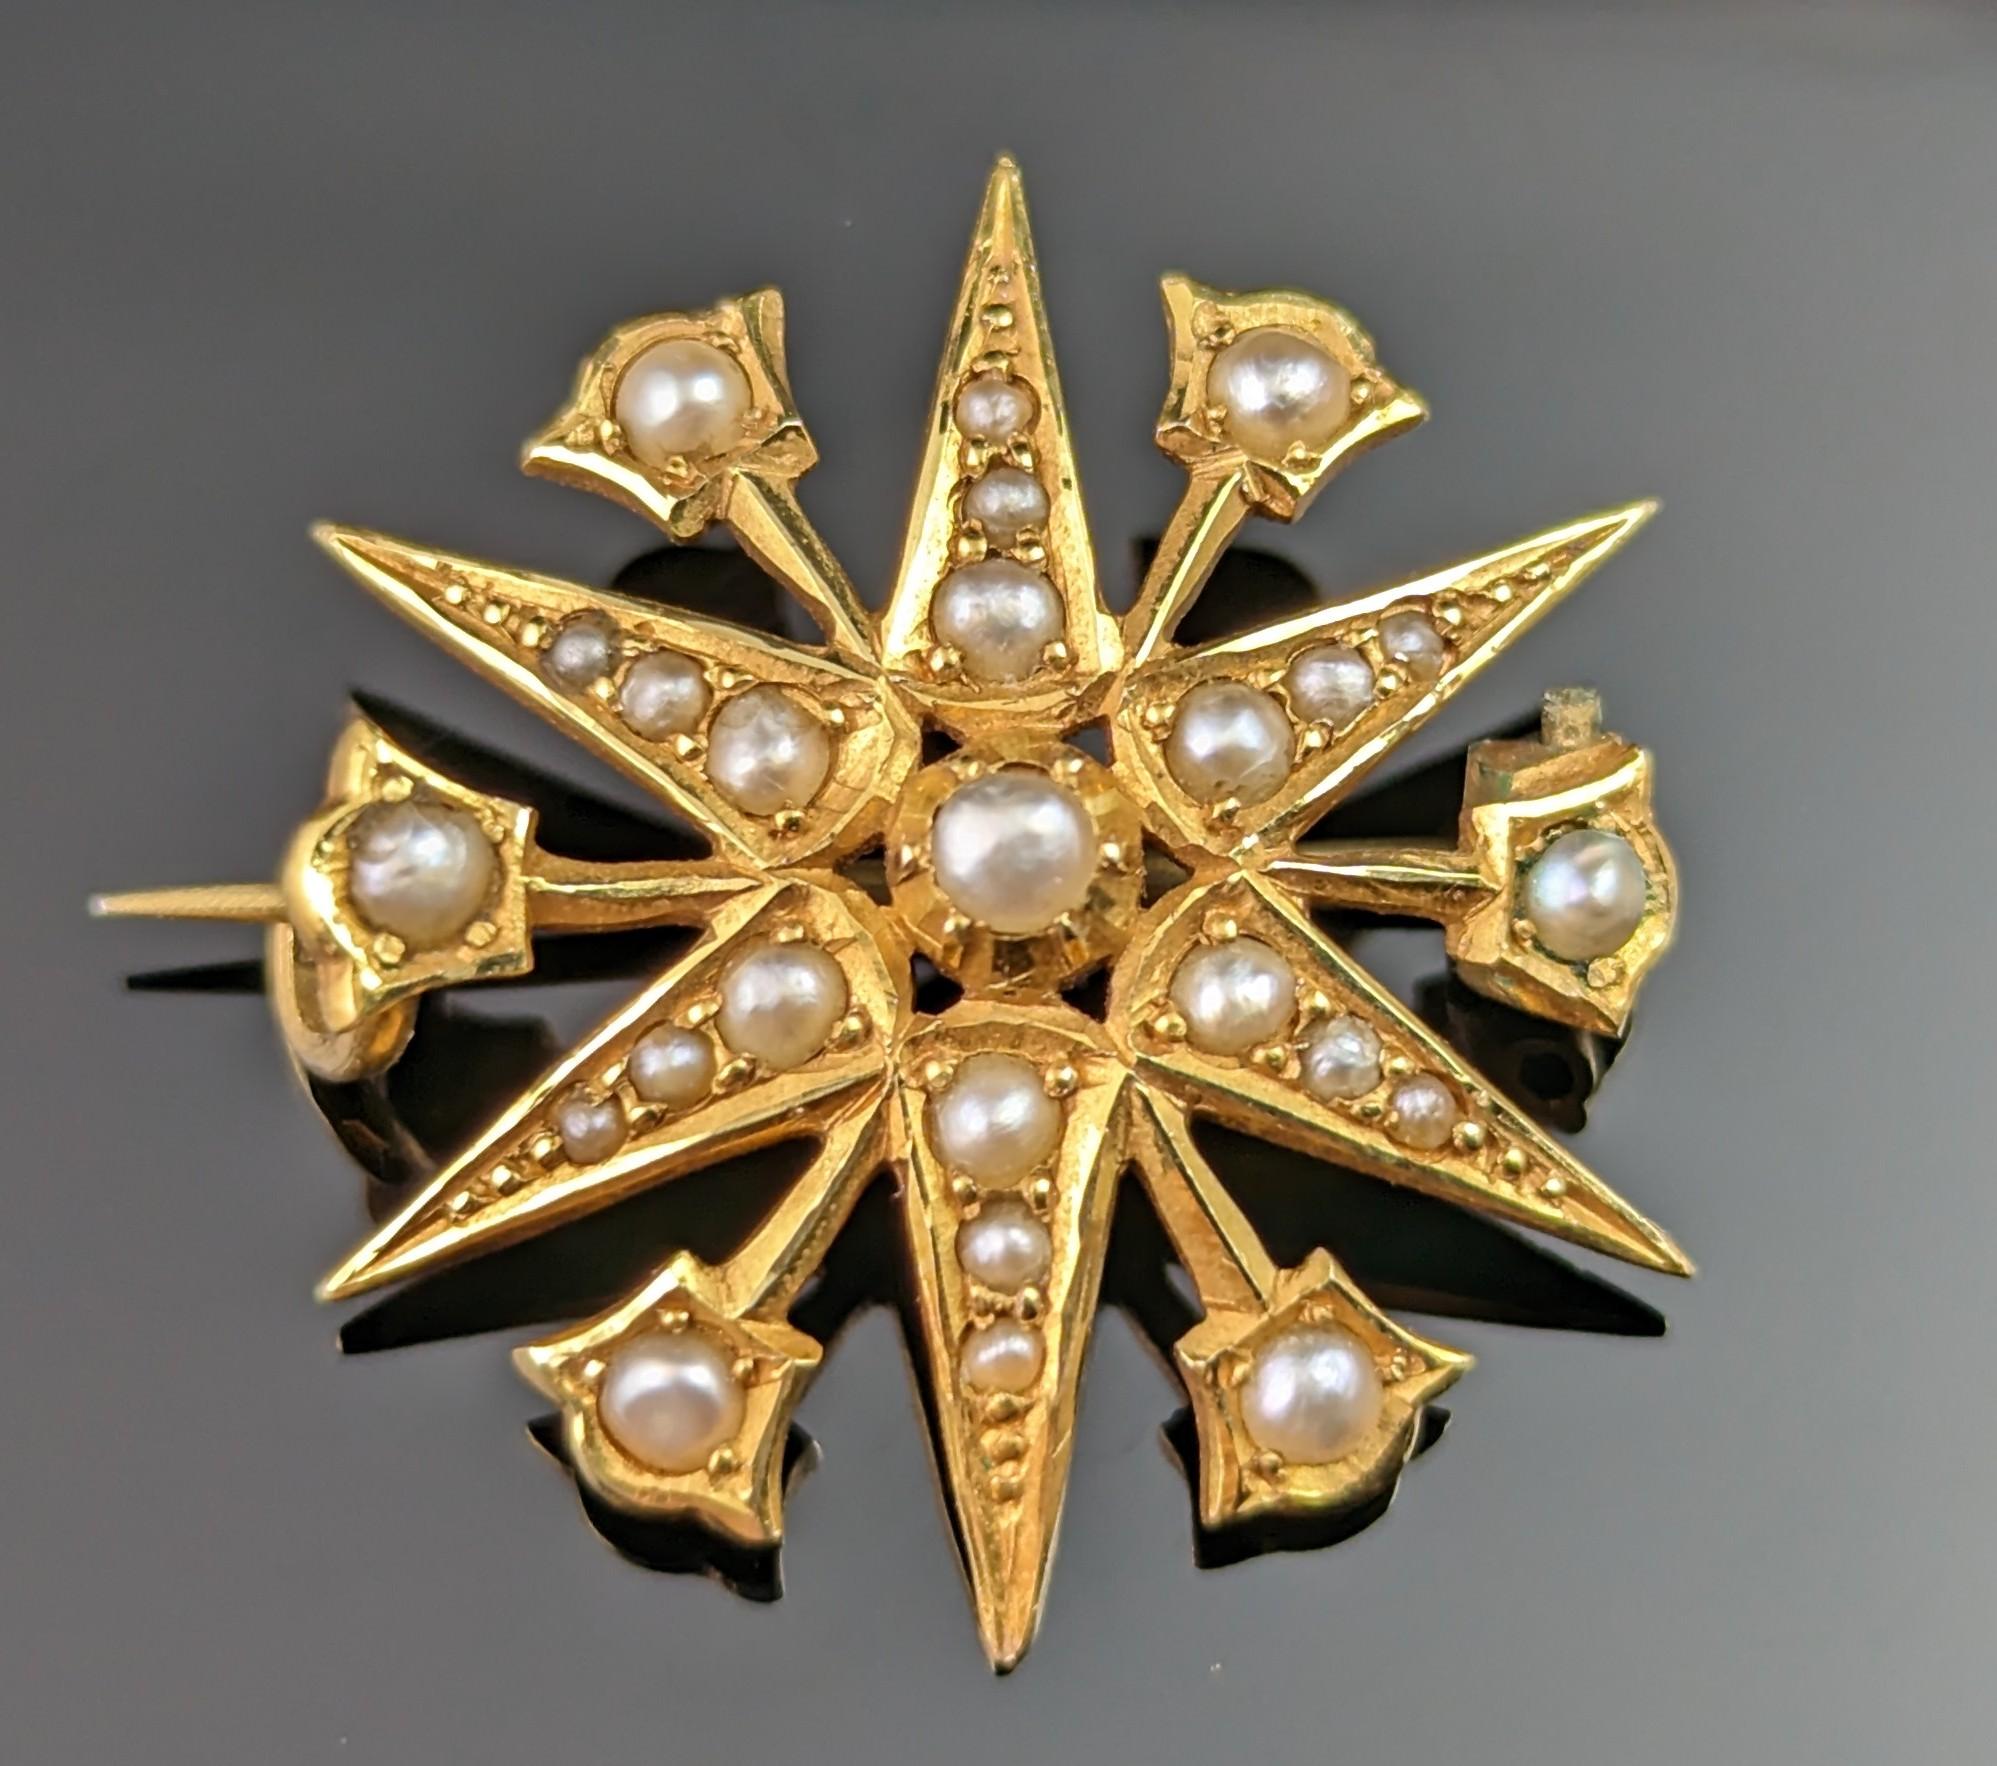 Himmlische Schmuckstücke wie diese antike Sternbrosche aus 15-karätigem Gold und Perlen kommen einfach nie aus der Mode!

Sterne und himmlische Juwelen haben eine zeitlose Anziehungskraft, die nicht nachlässt, und sie sind heute so tragbar wie